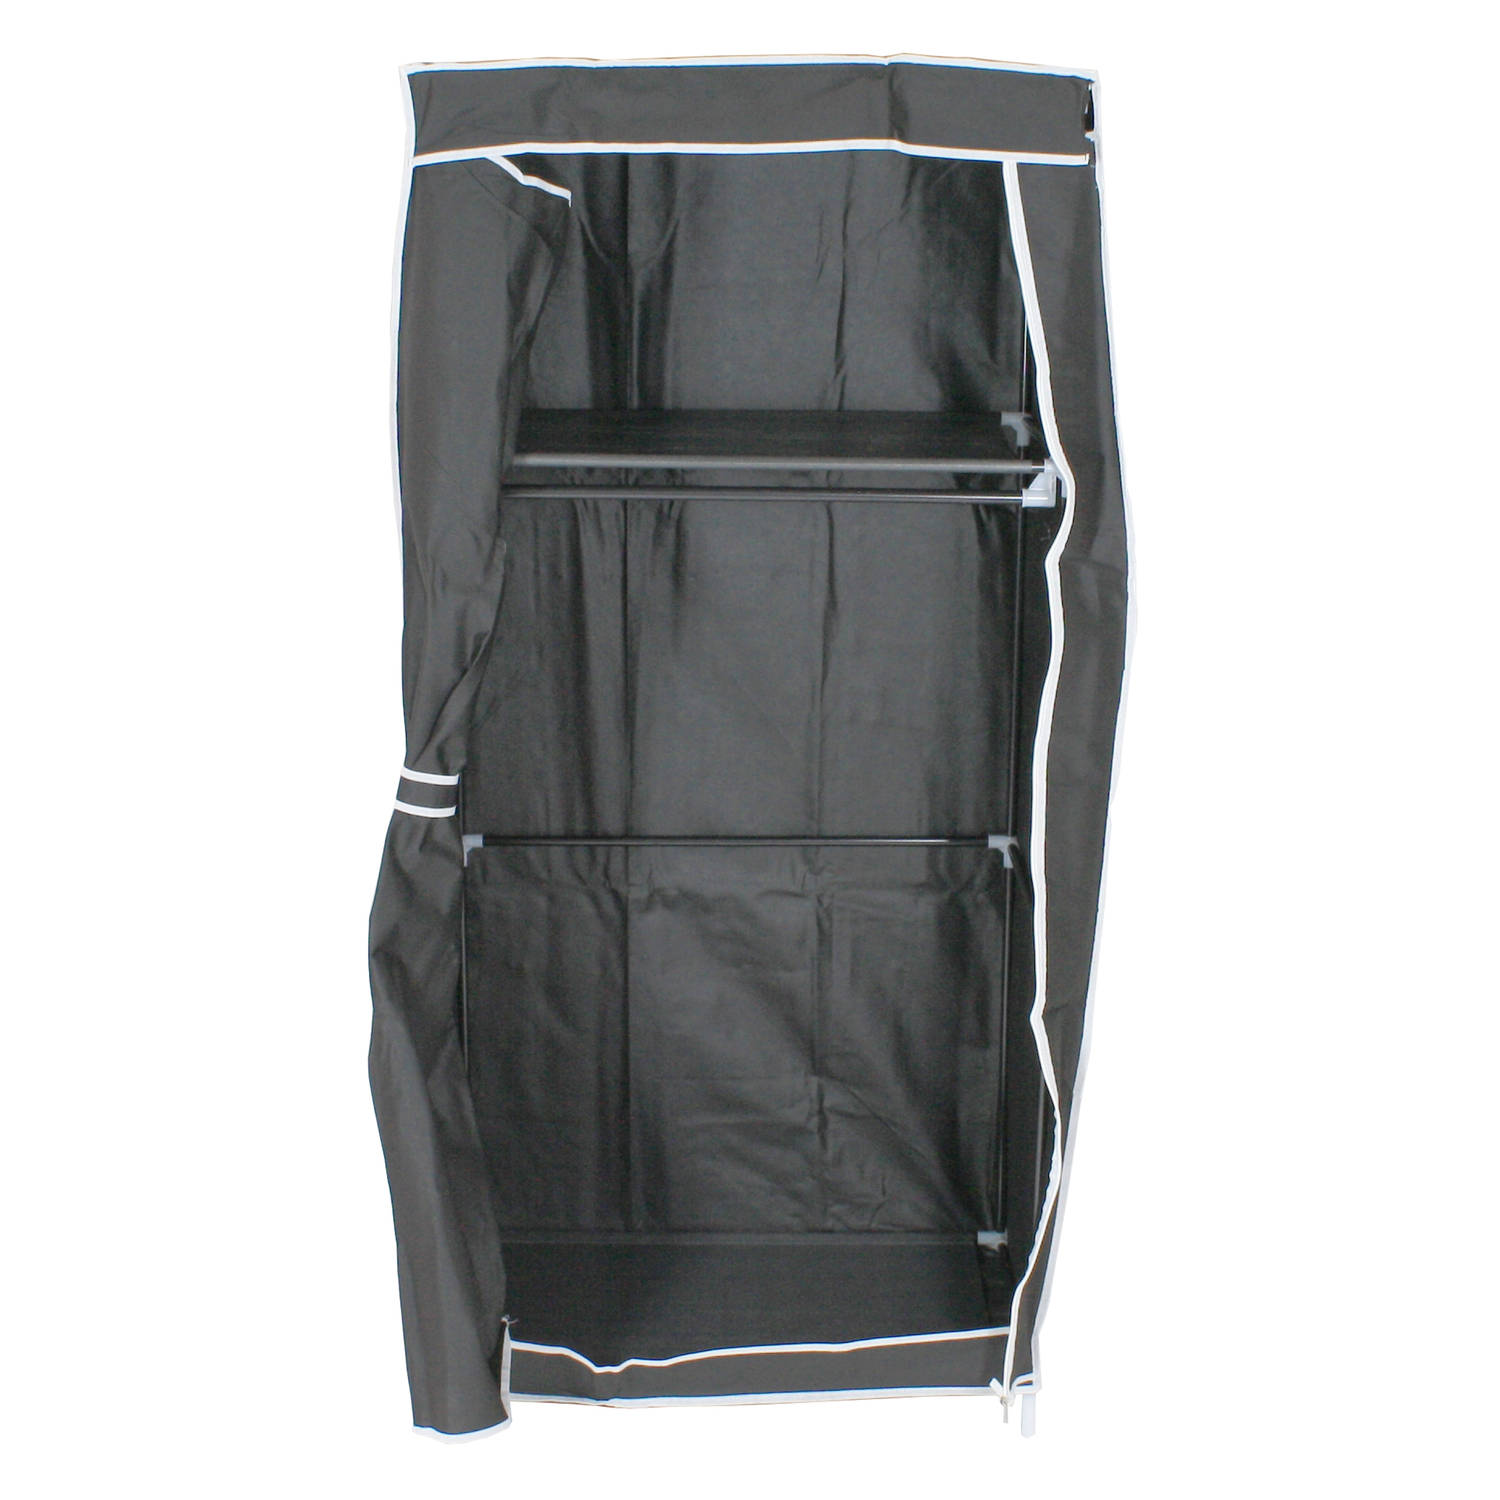 Lowander garderobekast Milano 170cm - Opvouwbare opbergkast Inklapbare kledingkast Canvas campingkast - Zwart